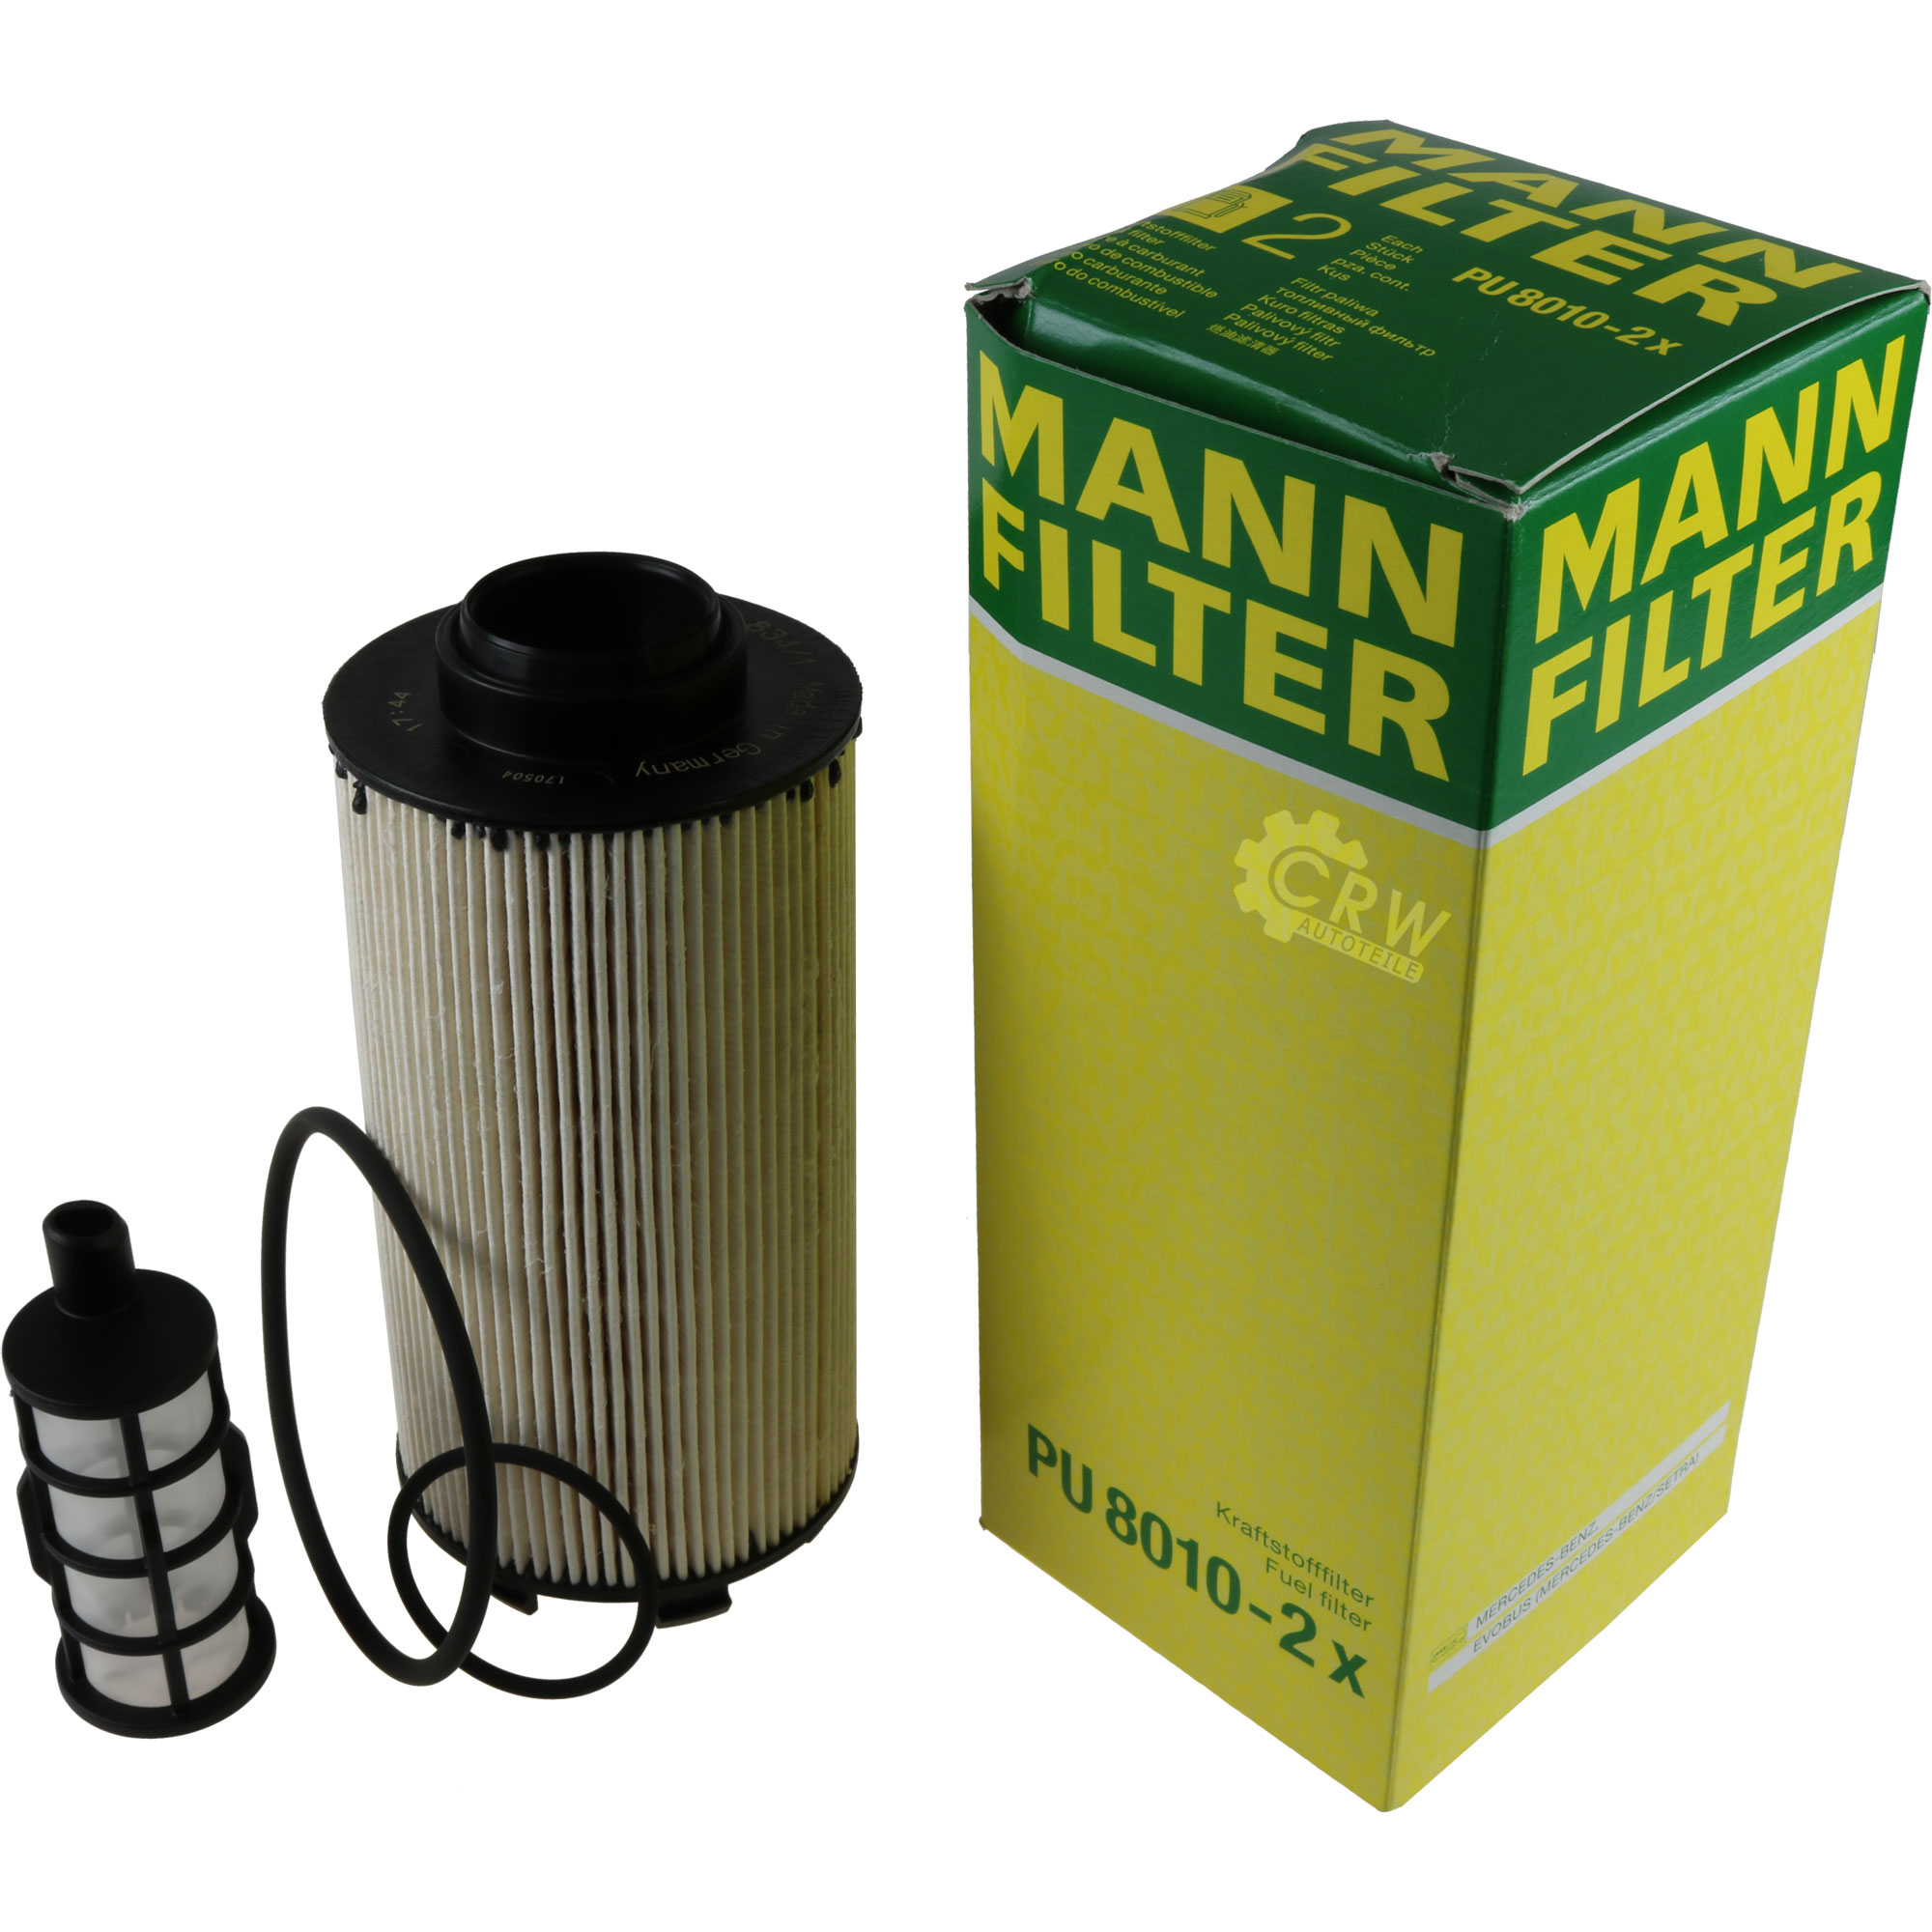 MANN-FILTER Servicekit Kraftstofffilter PU 8010-2 x Fuel Filter